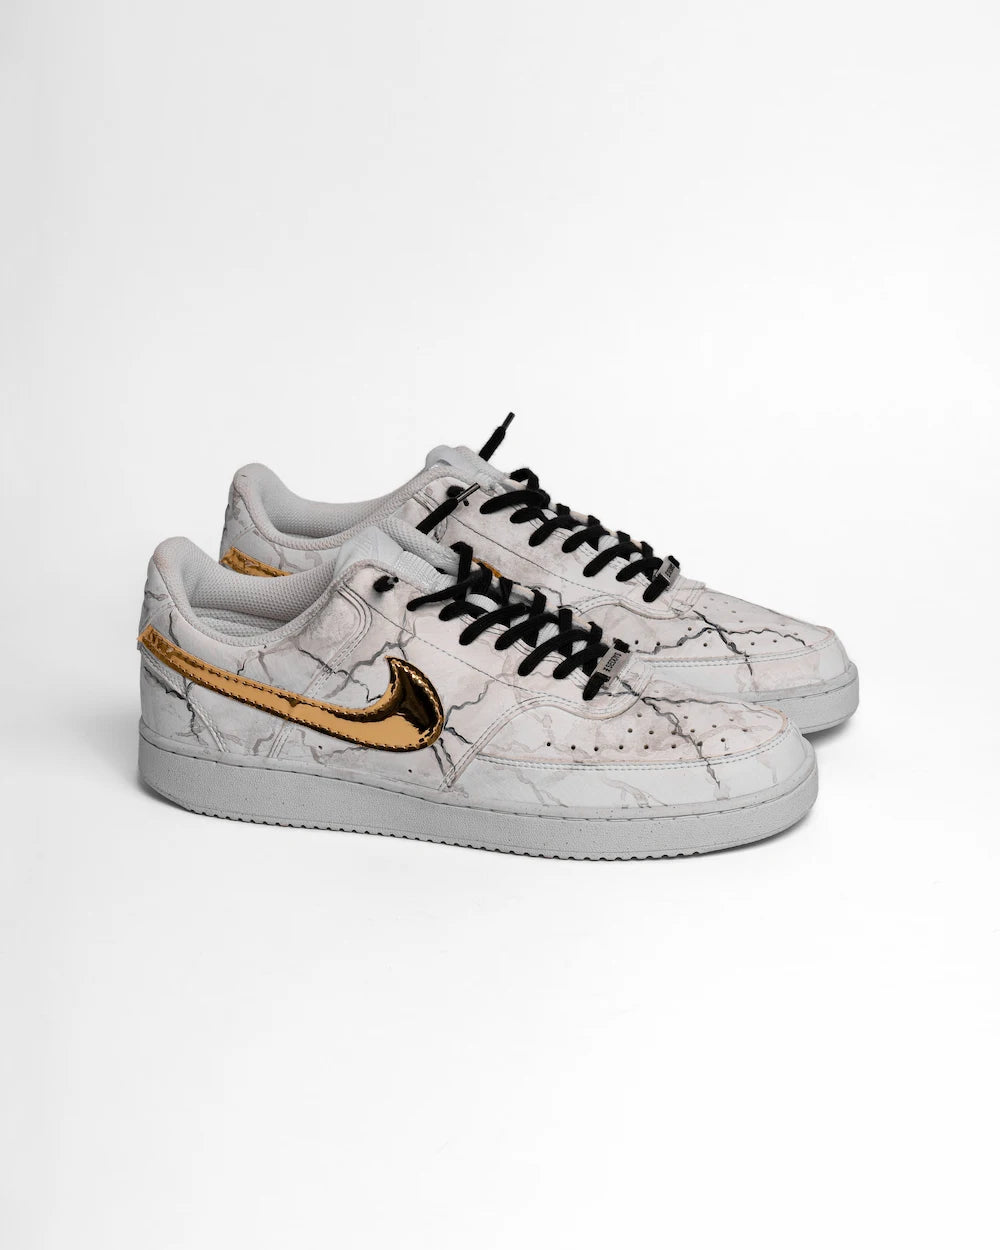 Nike Court Vision sneaker custom effetto marmo, Swoosh con tessuto metallizzato oro